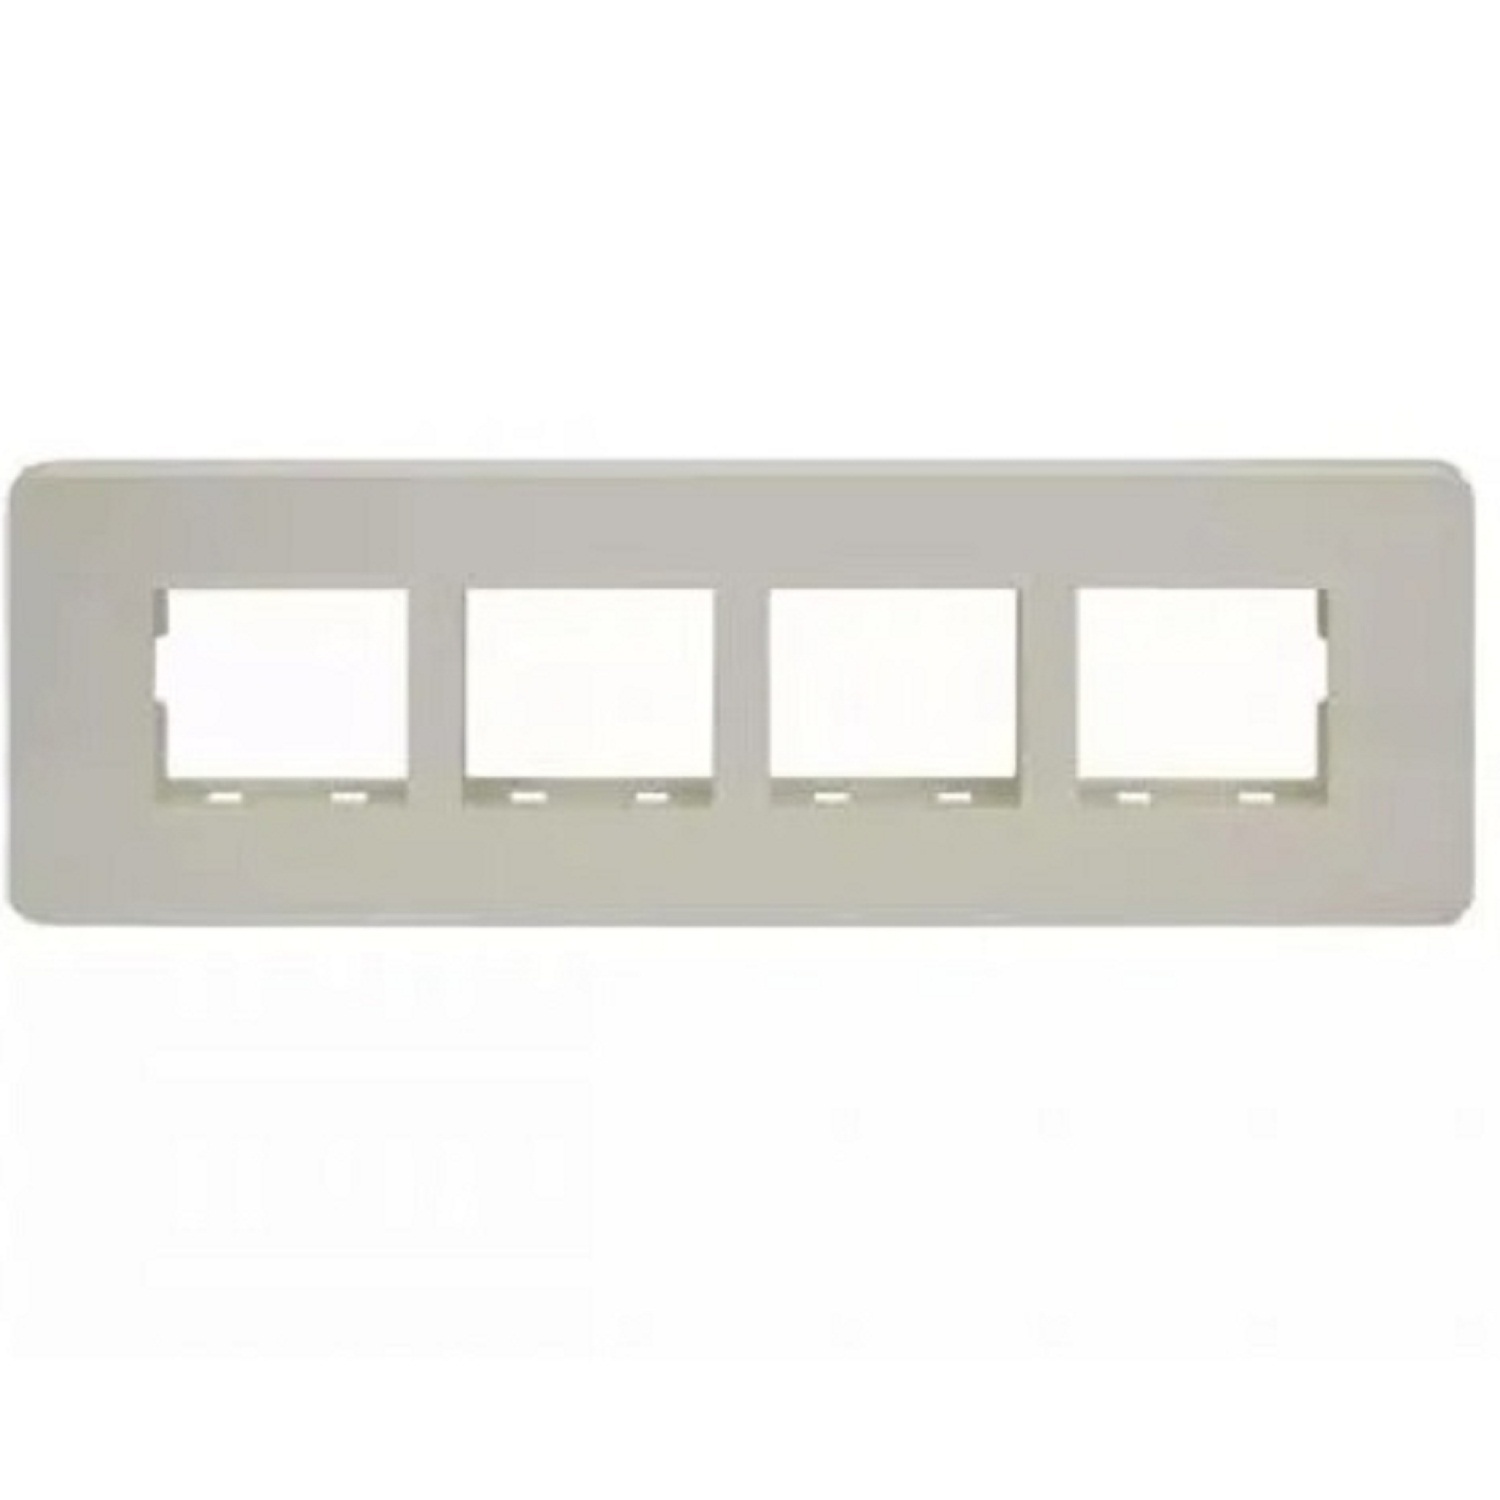  LT Engem  8 Module (Regular) Horizontal Cover Plate with Base Frame- White